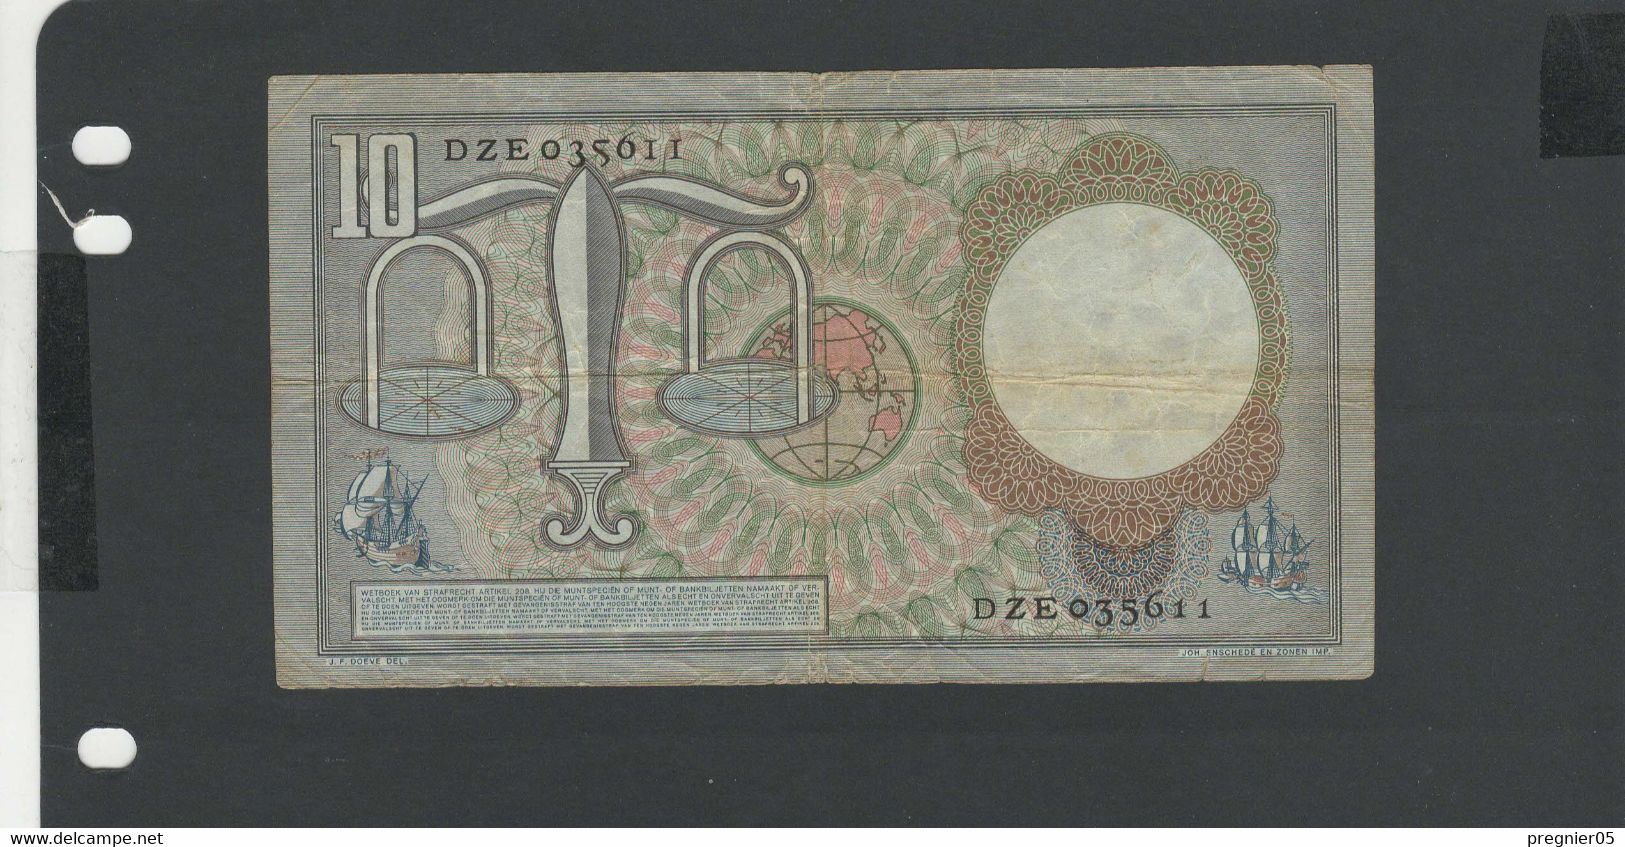 PAYS BAS -  Billet 10 Gulden 1953 TB/F Pick-85 N° DZE - 2 1/2  Florín Holandés (gulden)